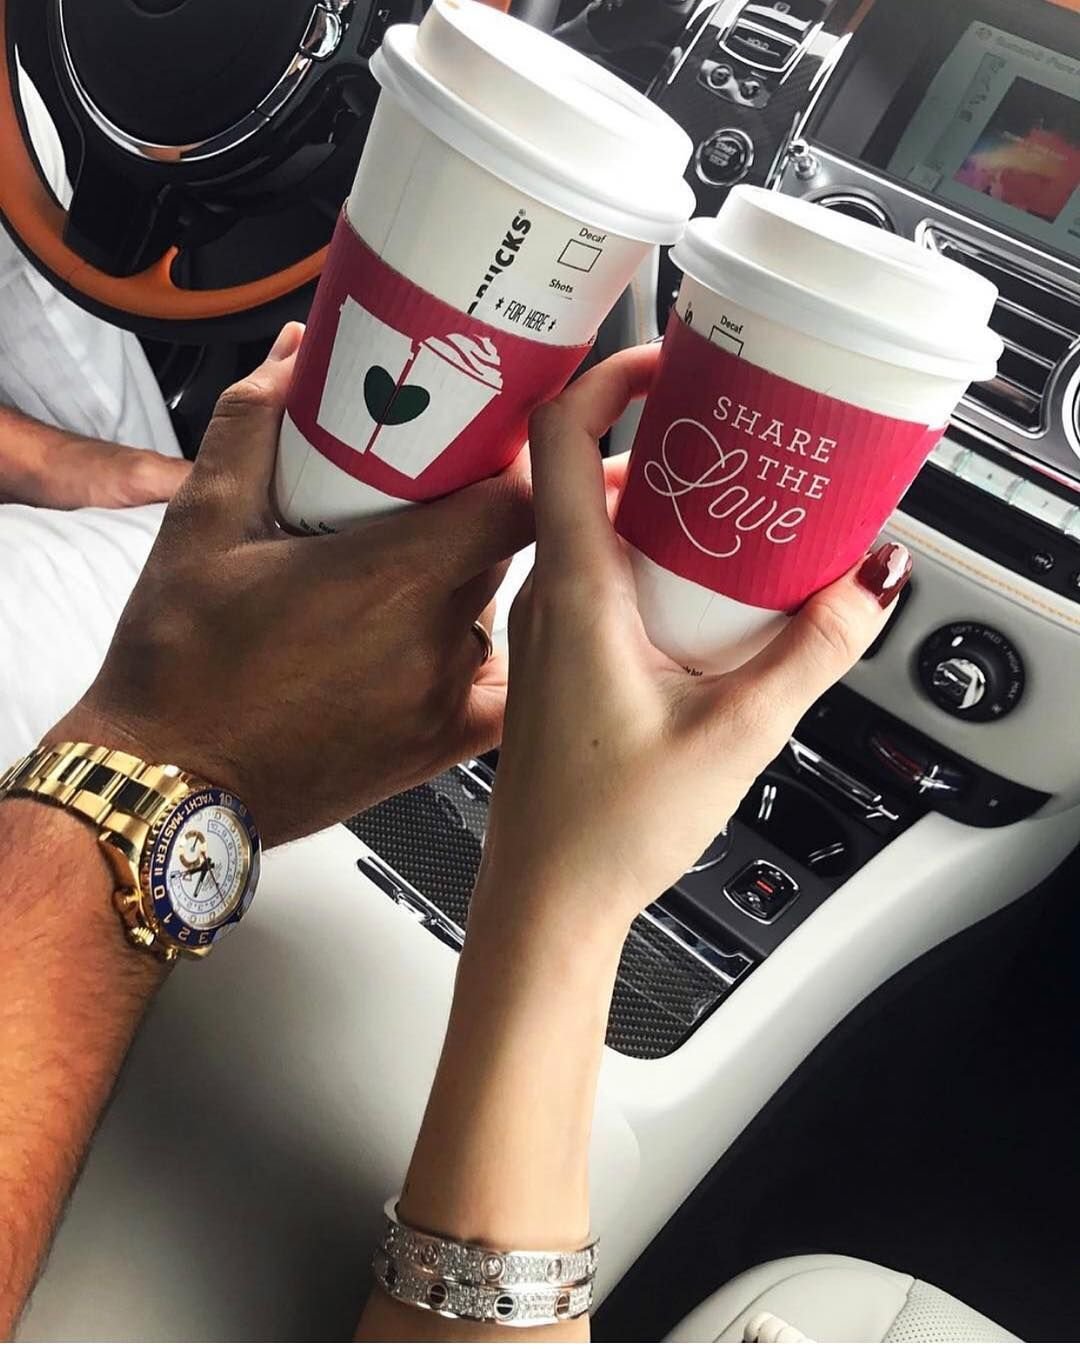 Кофе в руке у девушки фото в машине